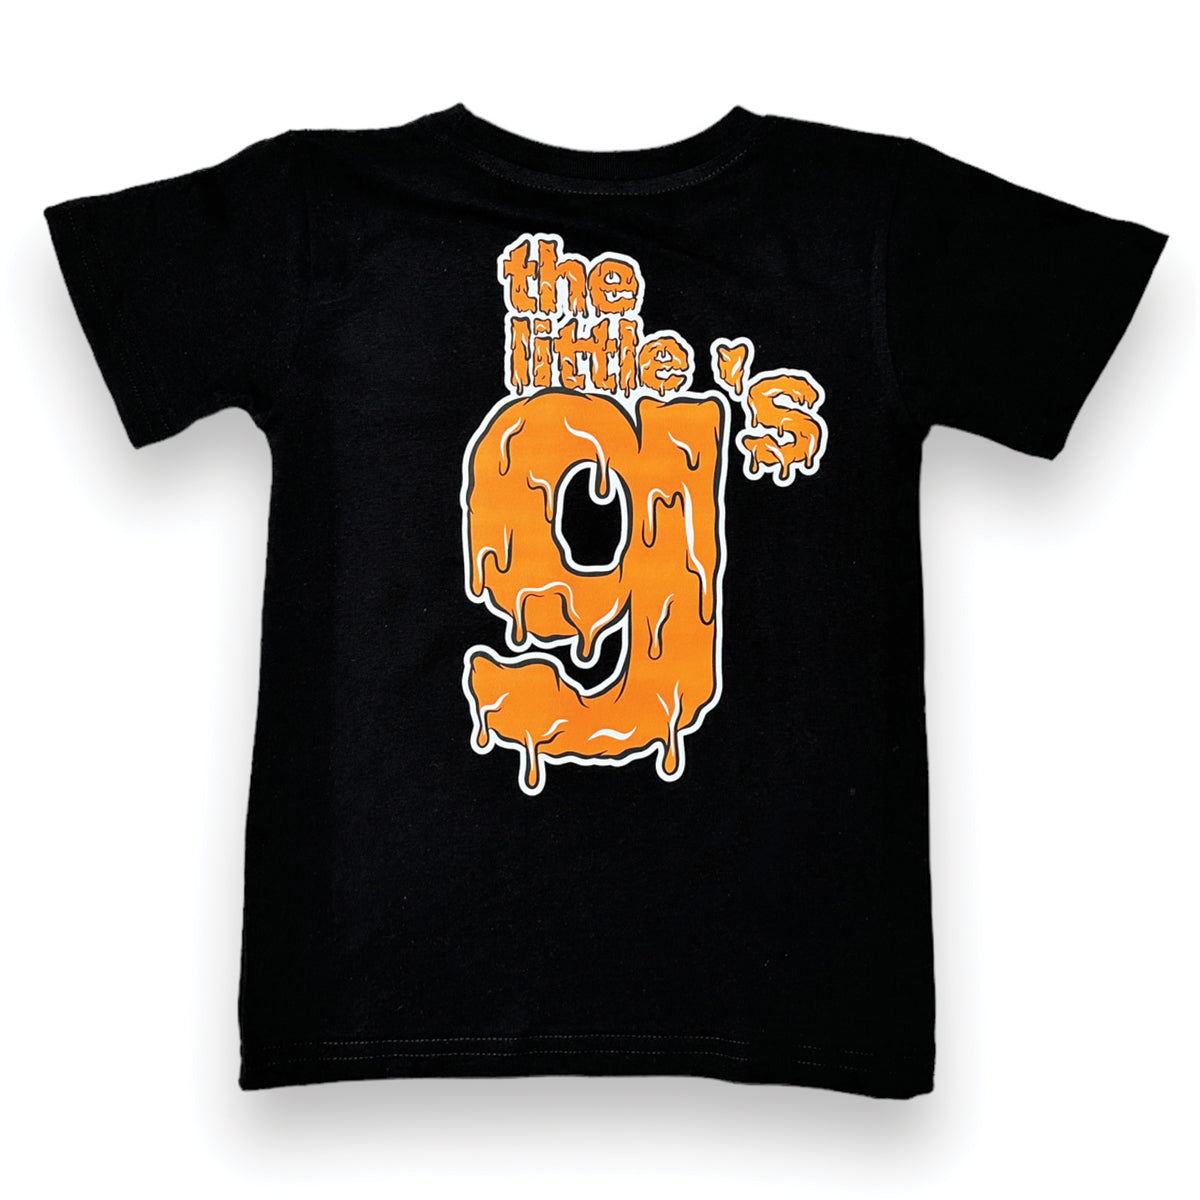 Little g's Orange Slime T-shirt (Black)